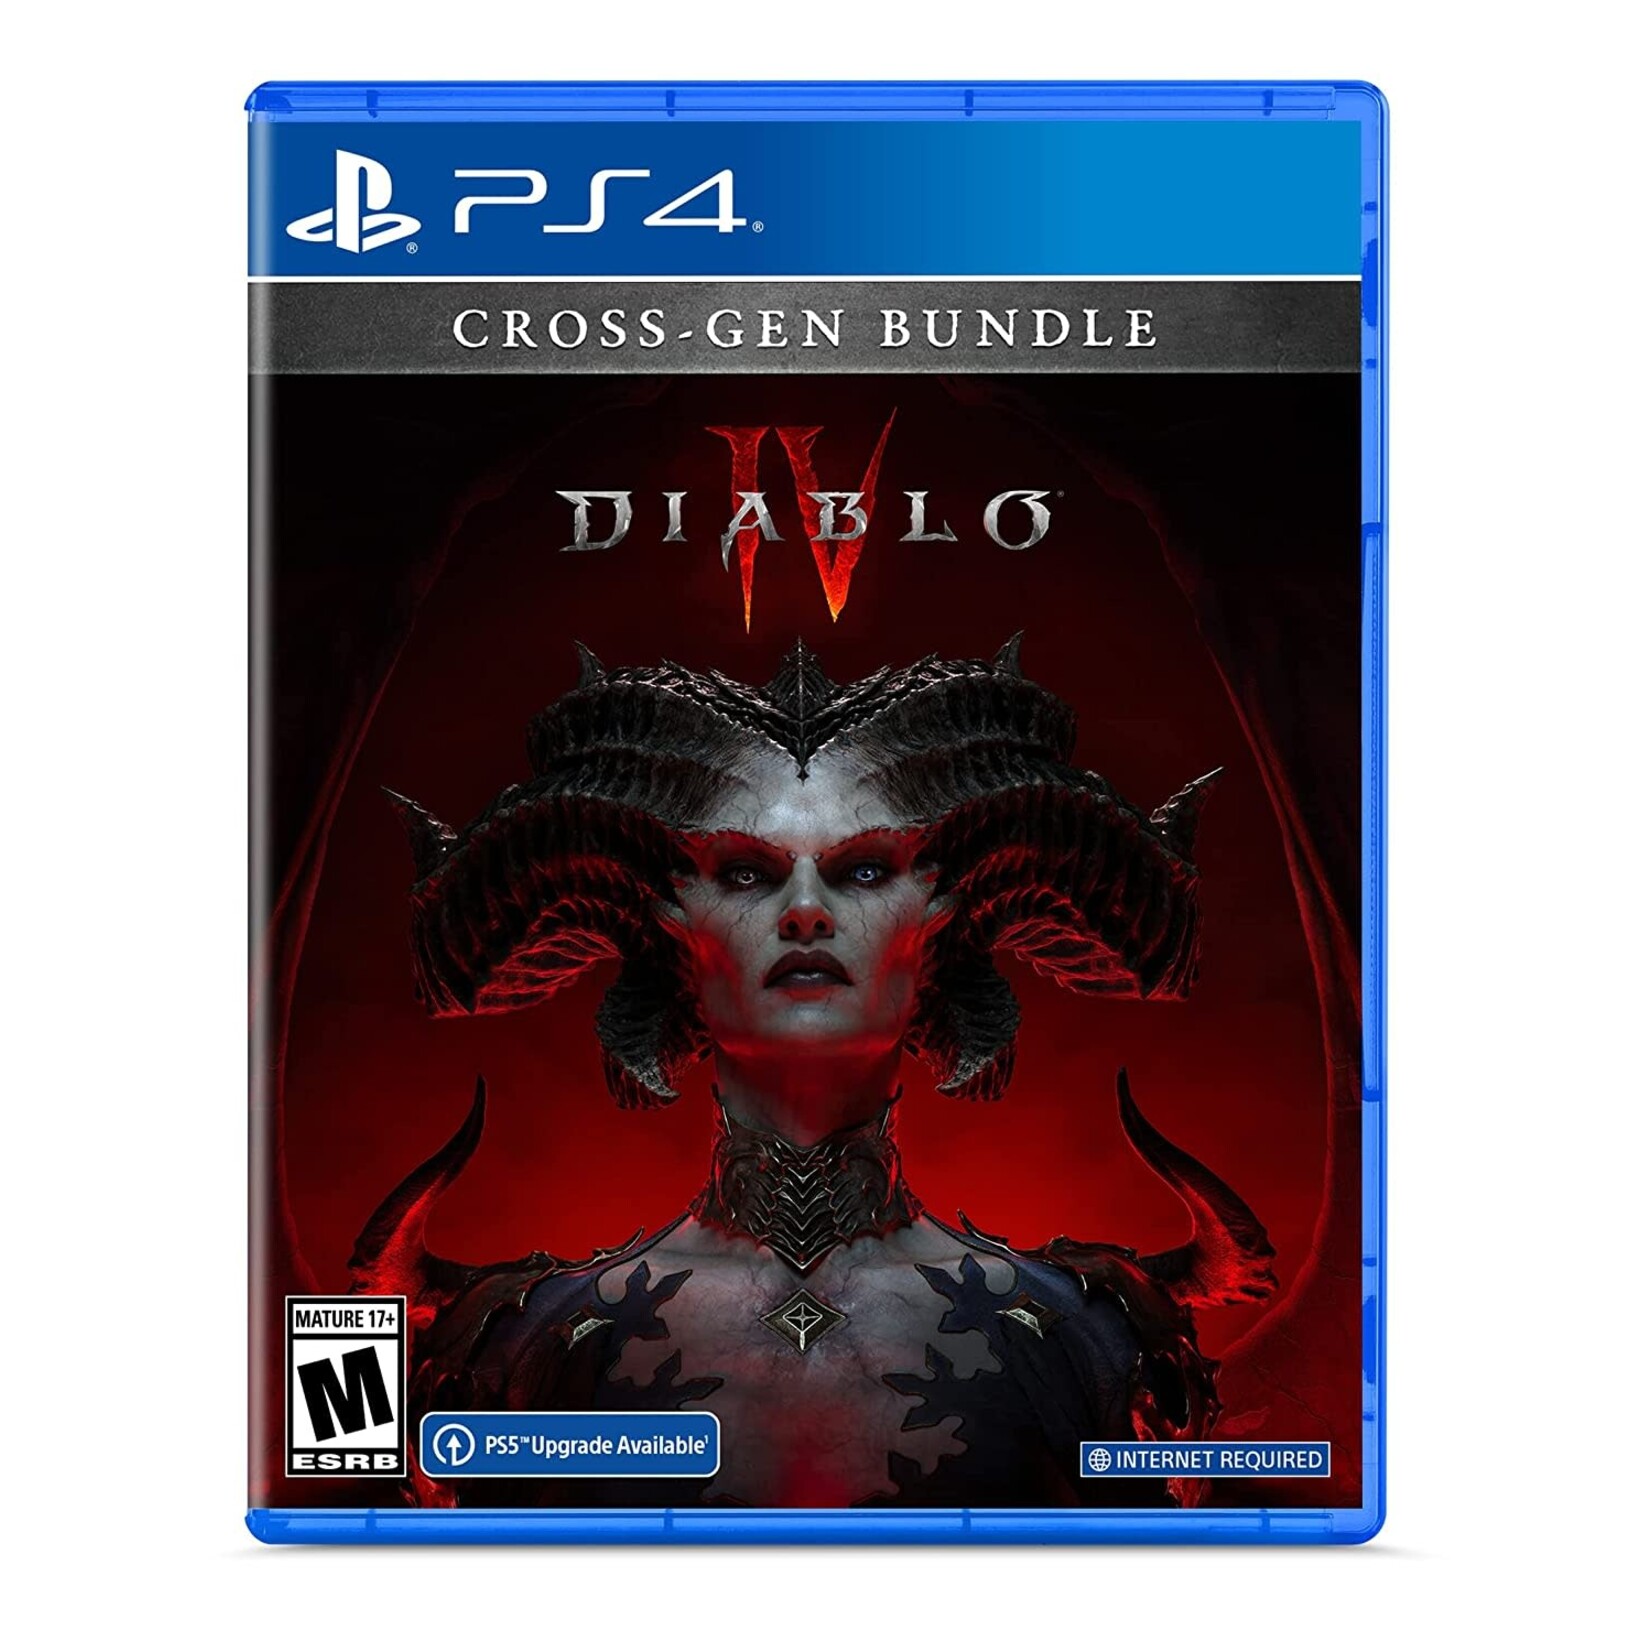 PS4-Diablo IV